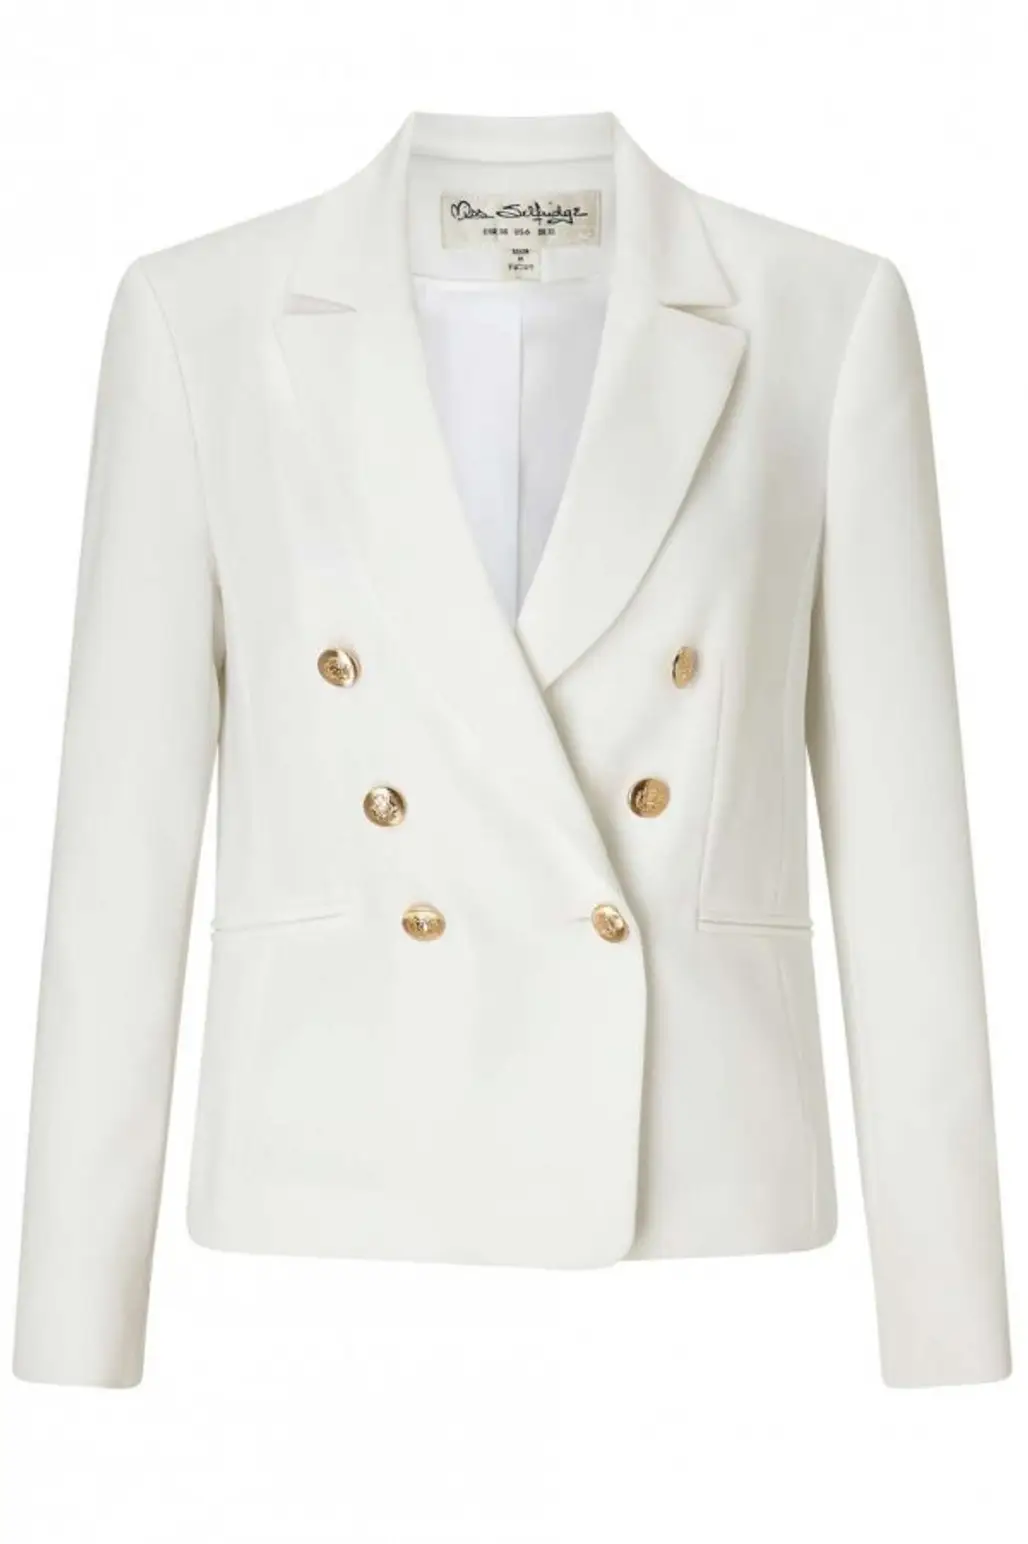 clothing, jacket, outerwear, blazer, formal wear,